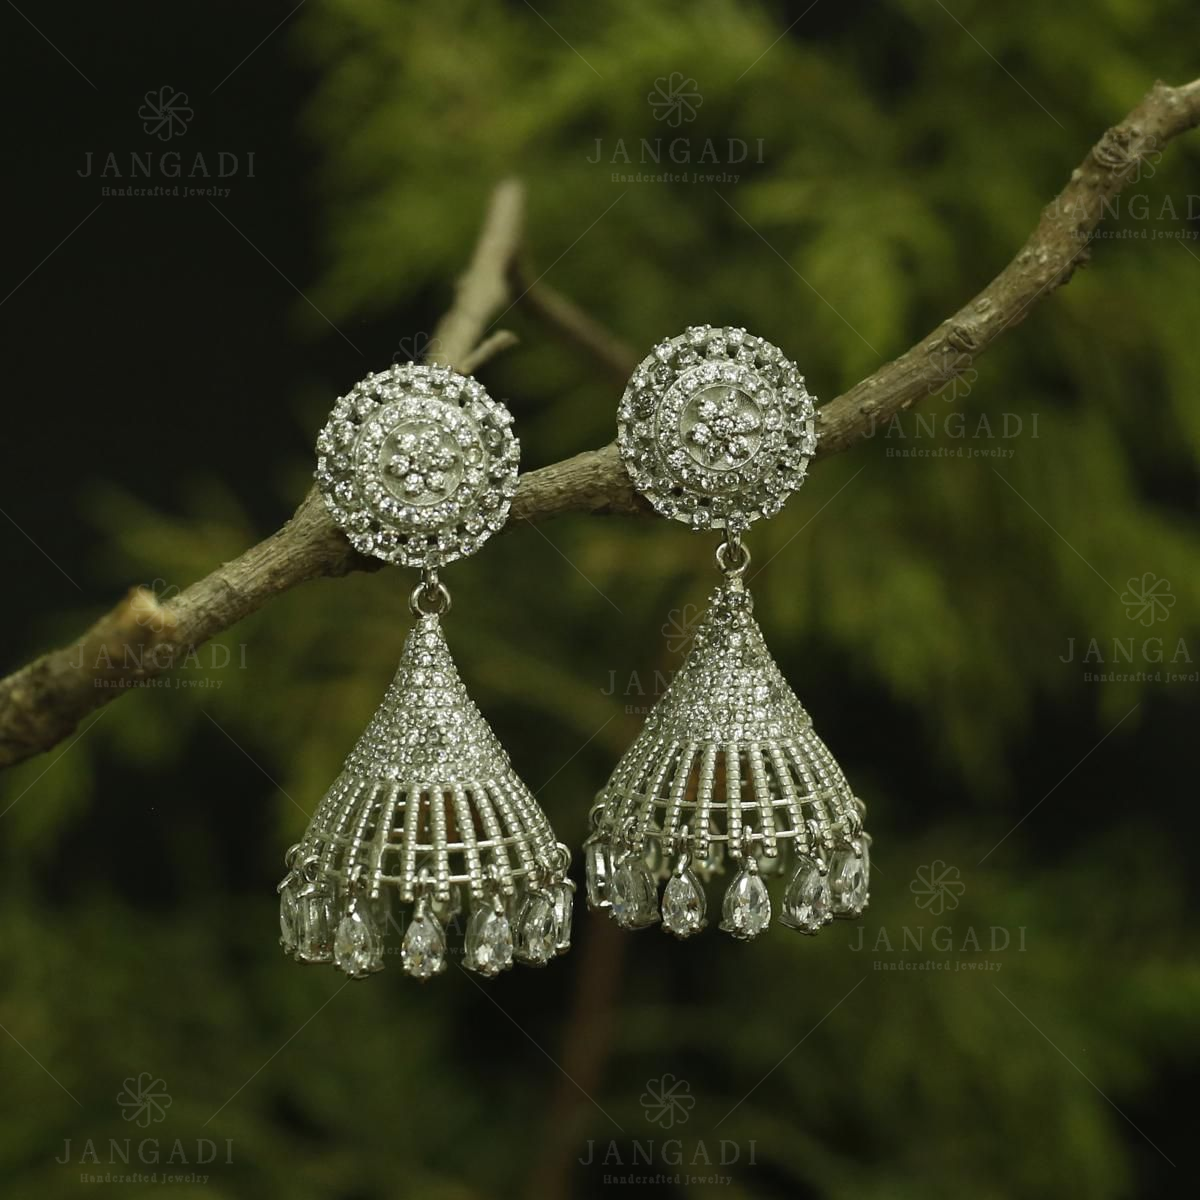 22K Gold Jhumkas (Buttalu) - Gold Dangle Earrings with Cz , Ruby & Emeralds  - 235-GJH2245 in 24.850 Grams